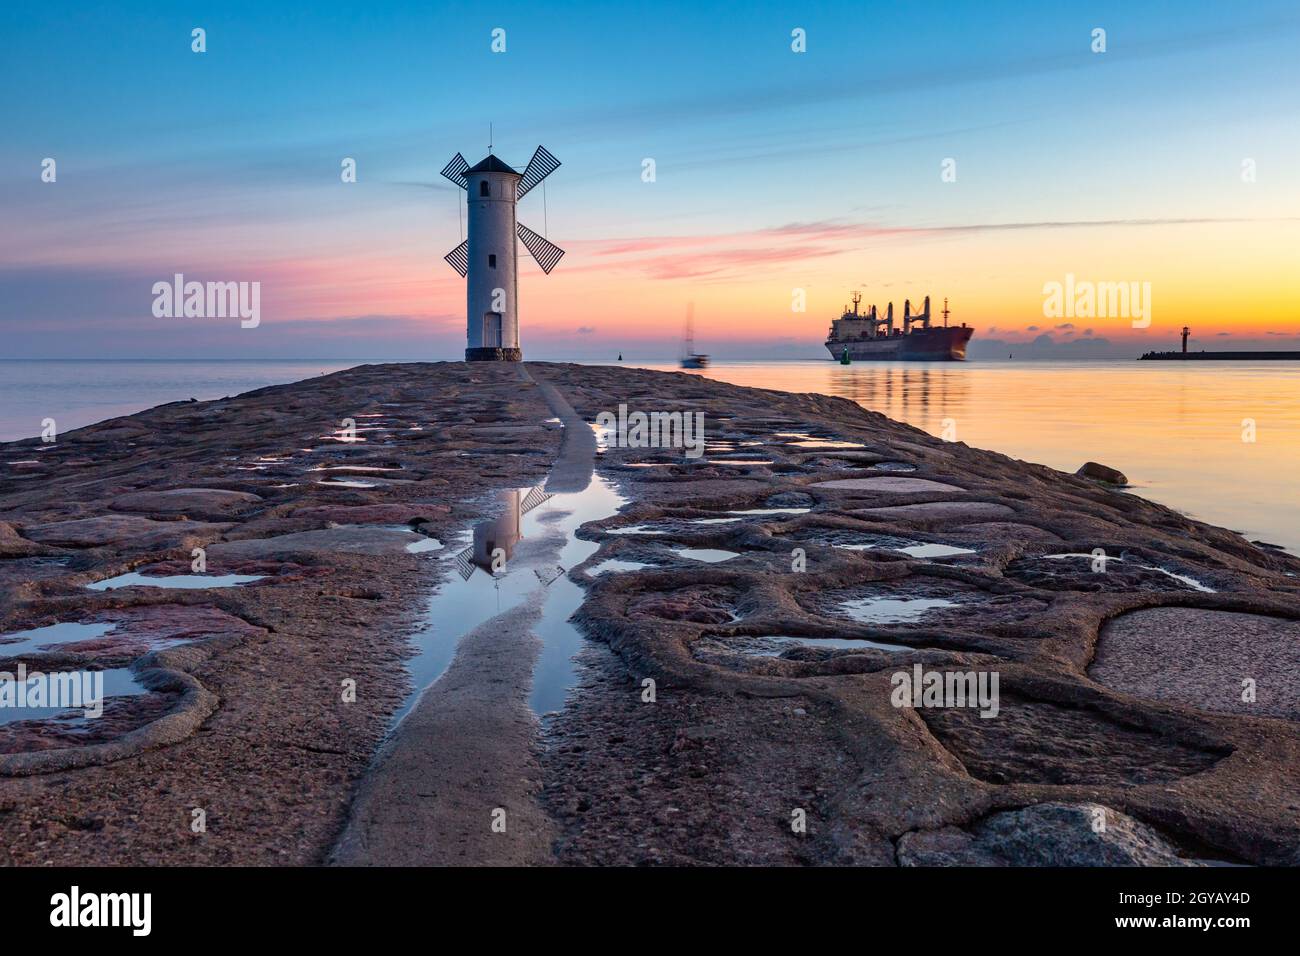 Mar Báltico y Stawa Mlyny, faro de navegación en forma de molino de viento al atardecer, símbolo oficial de Swinoujscie, Polonia Foto de stock